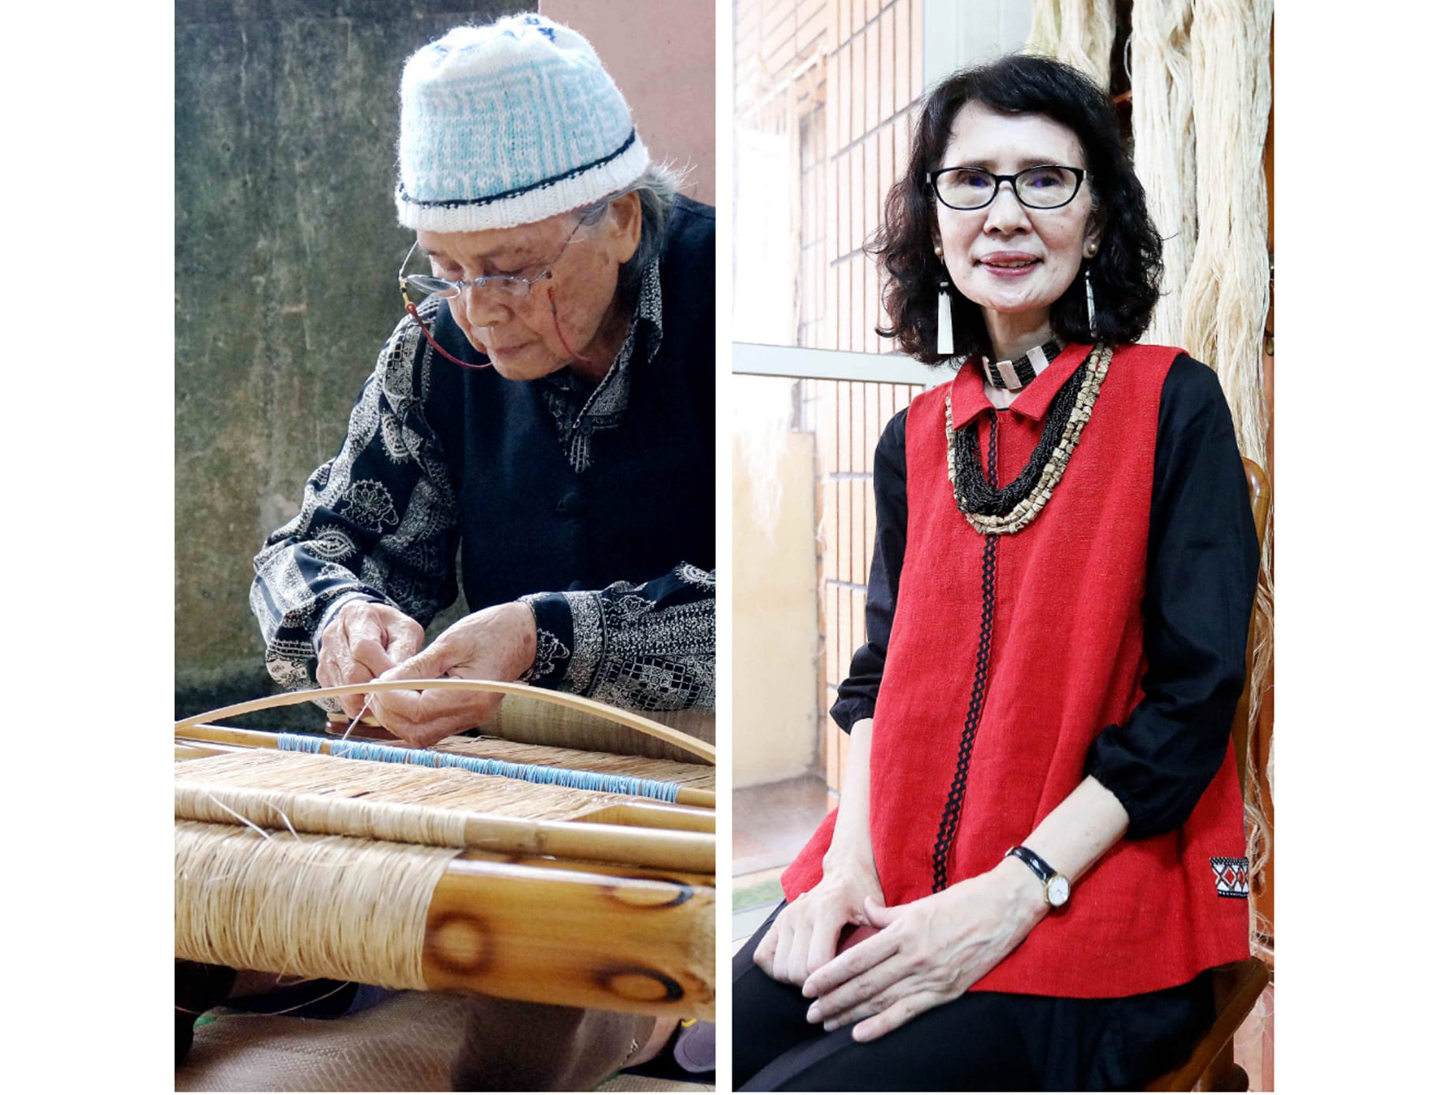 台湾ソフトパワー - 2021-06-01_重要伝統工芸に登録された2つの原住民族の伝統工芸と、それをそれぞれに継承する2人の女性